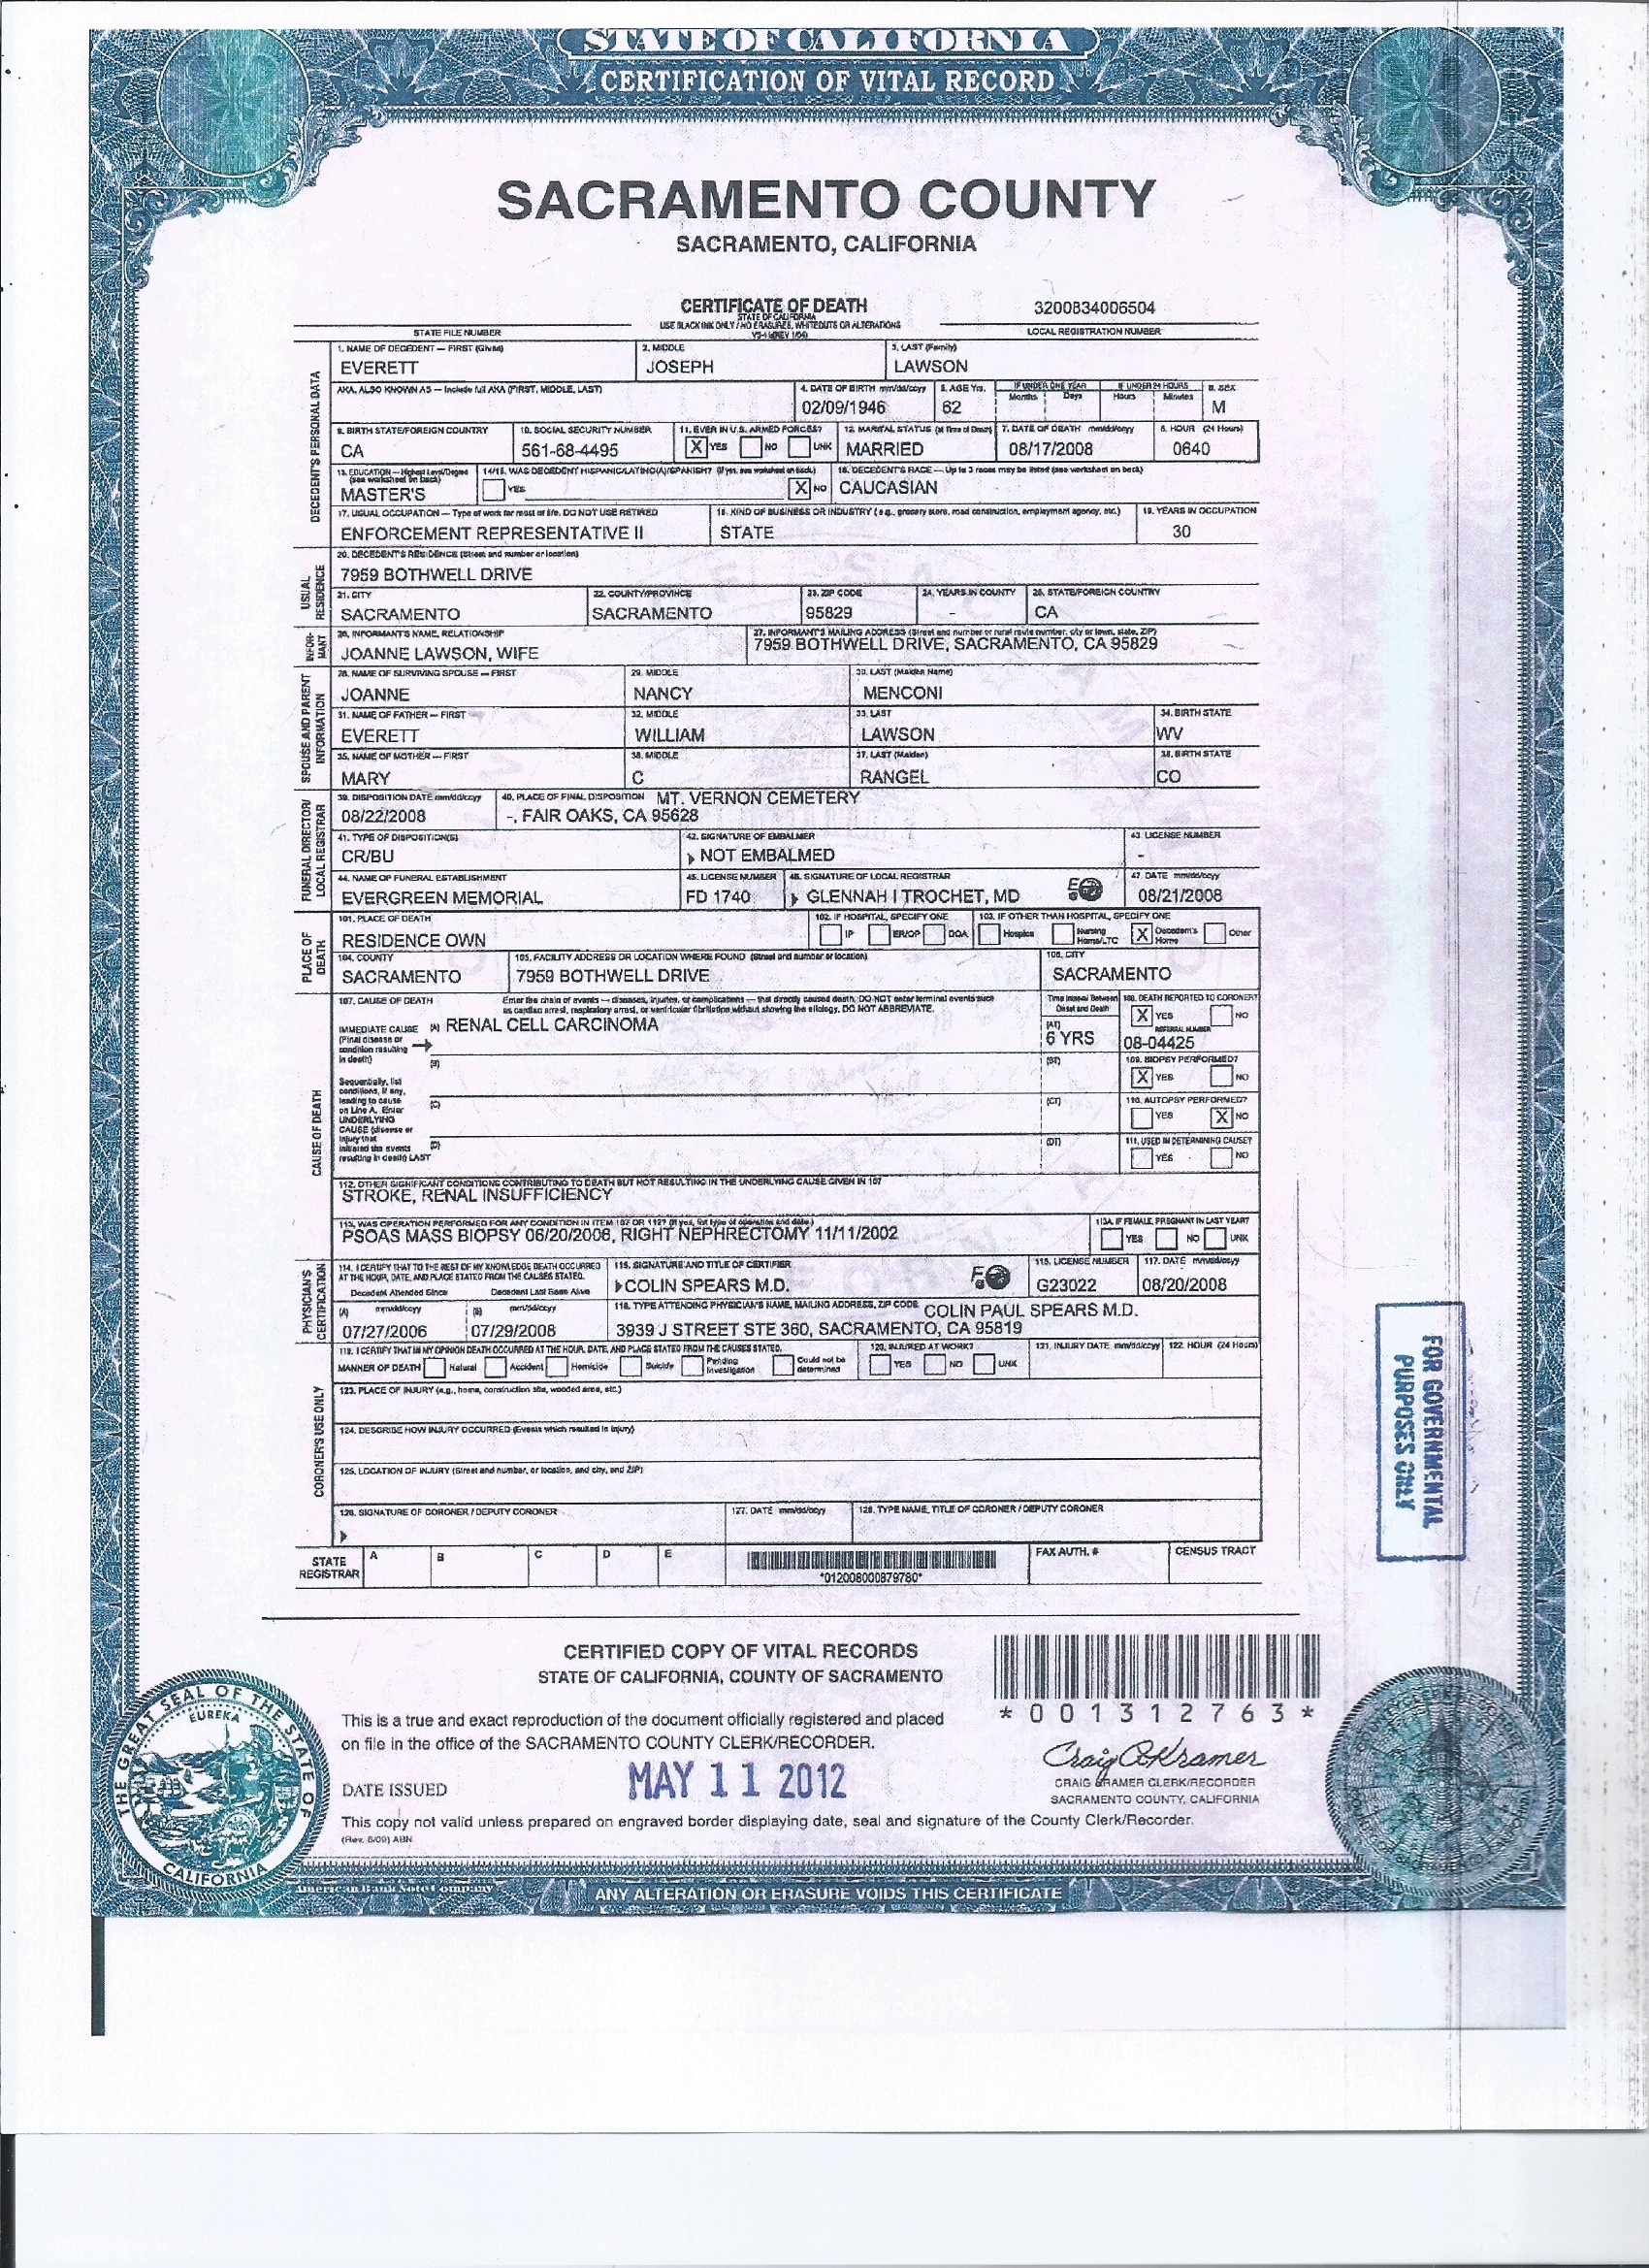 Death Certificate